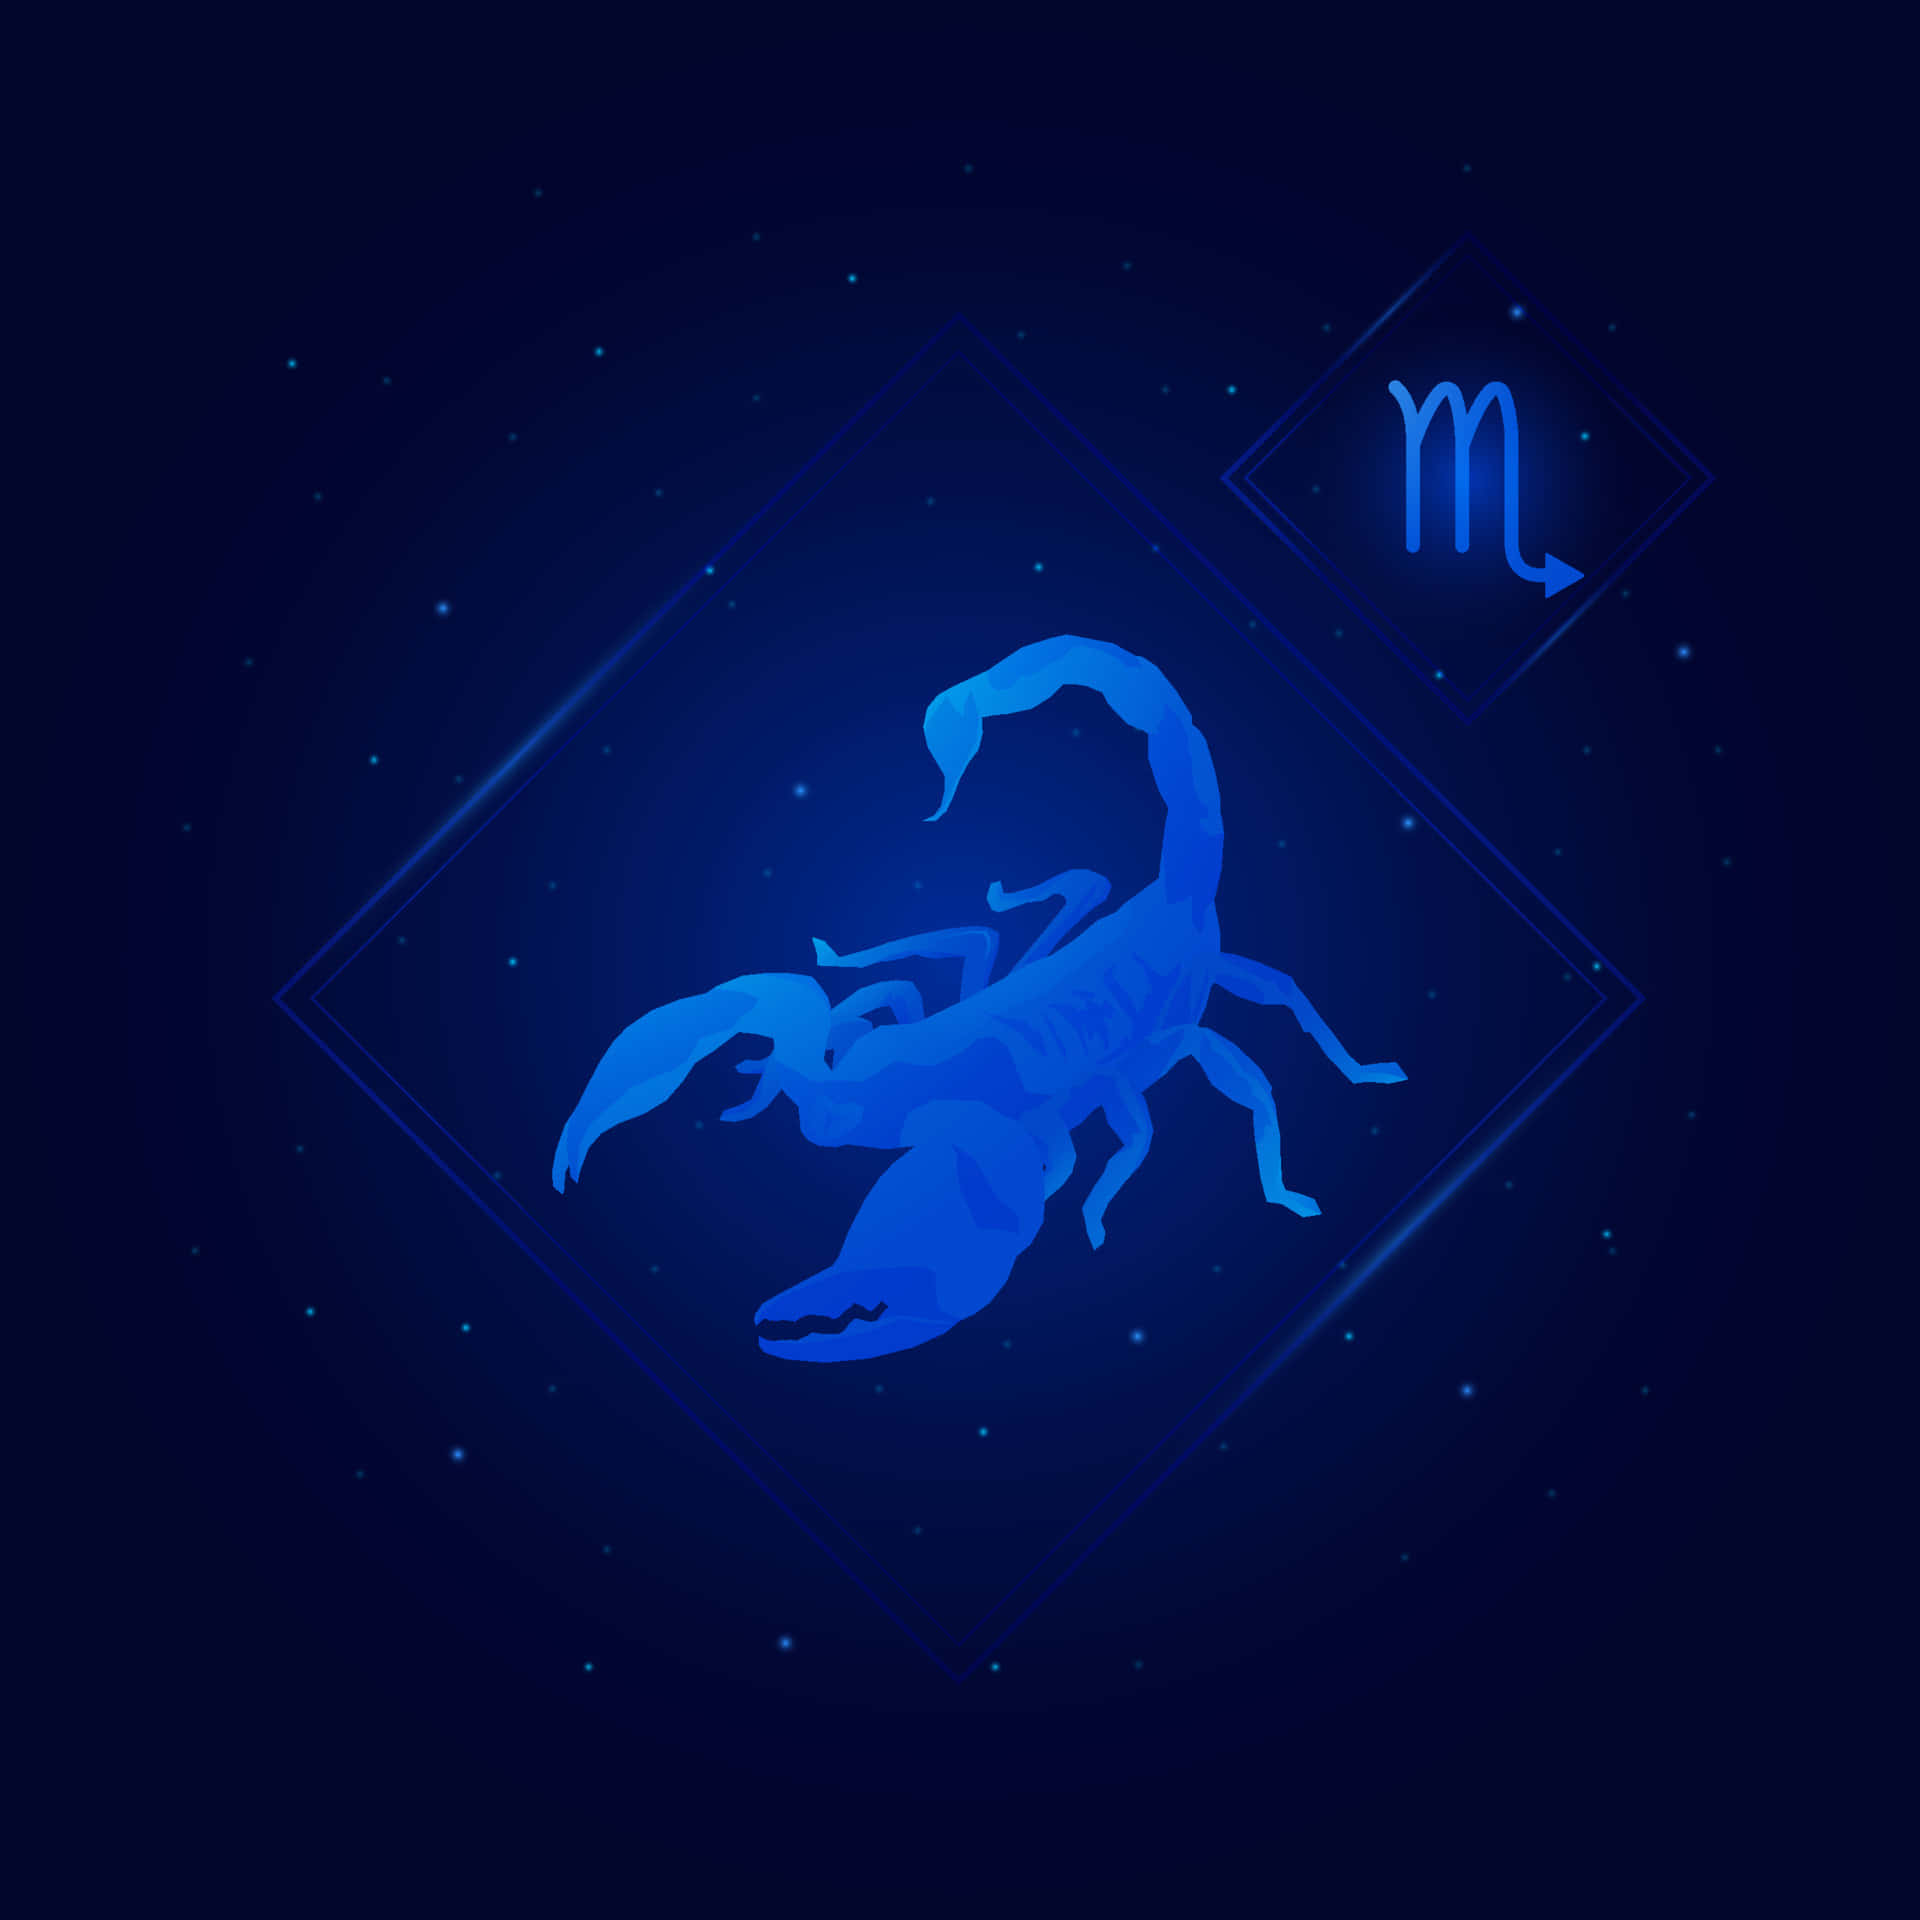 Simbolodello Scorpione Blu Nello Zodiaco Sfondo